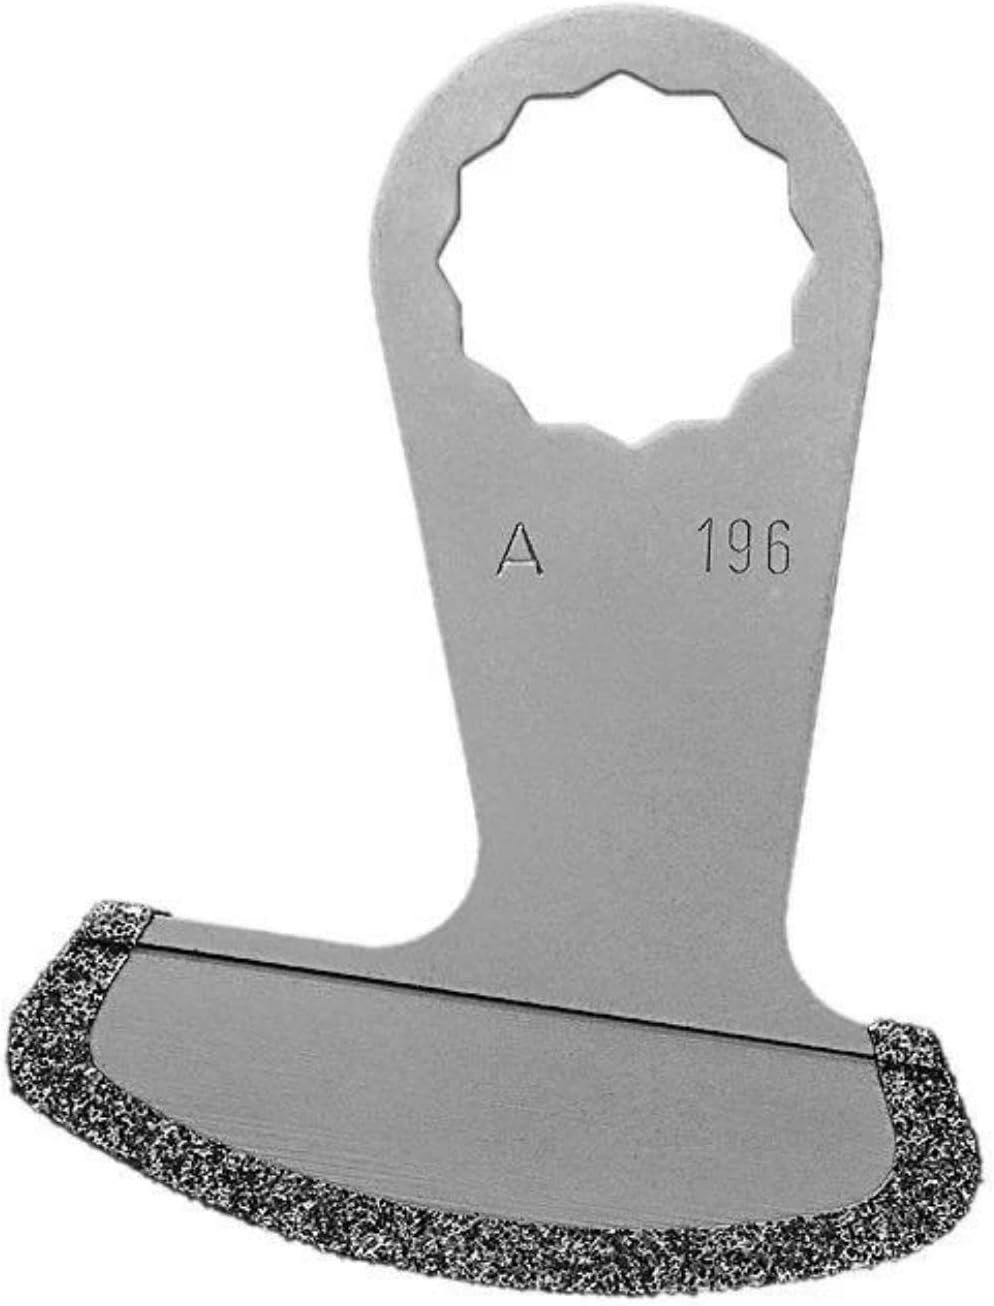 Messer Universalschneide-Aufsatz dünne für 1,2mm Schnittstärke Marmorfugen Fein